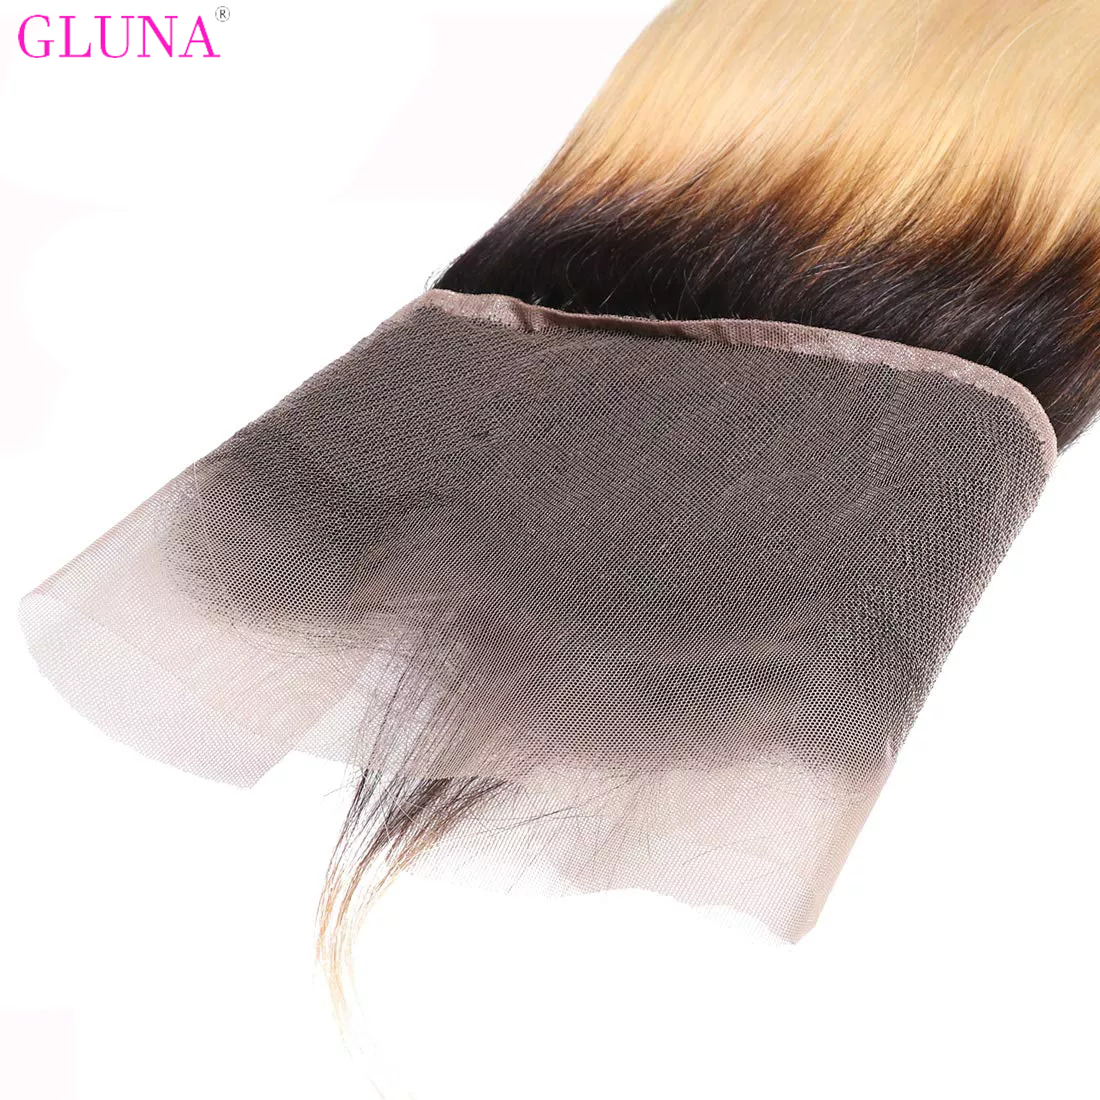 Gluna Hair 13×4 Lace Frontal Straight Hair 1B/613 Blonde Russian Virgin Hair (1B/613 color )